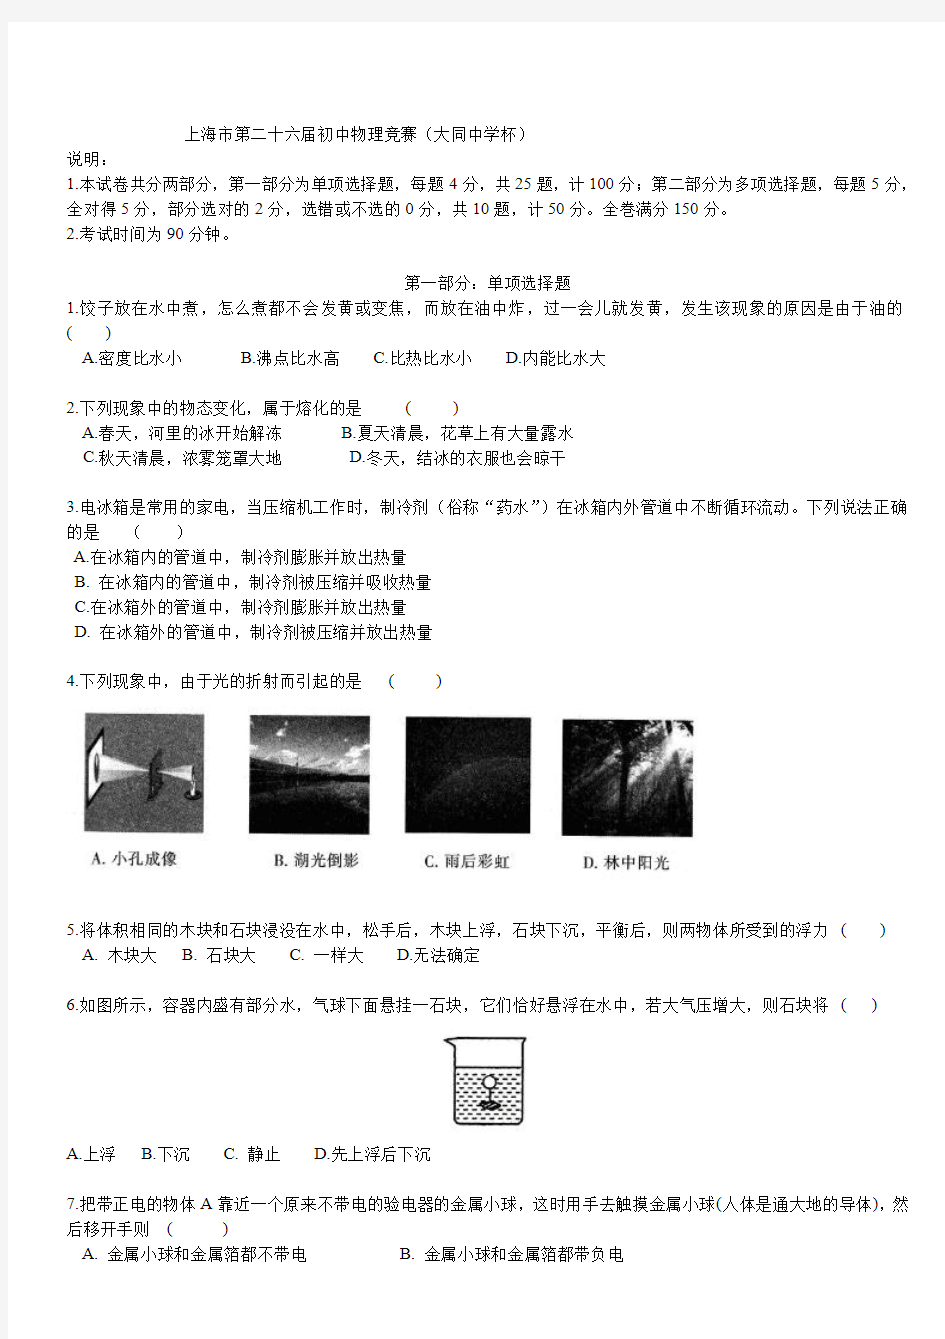 上海市第26届初中物理竞赛(初赛)试题及答案.pdf